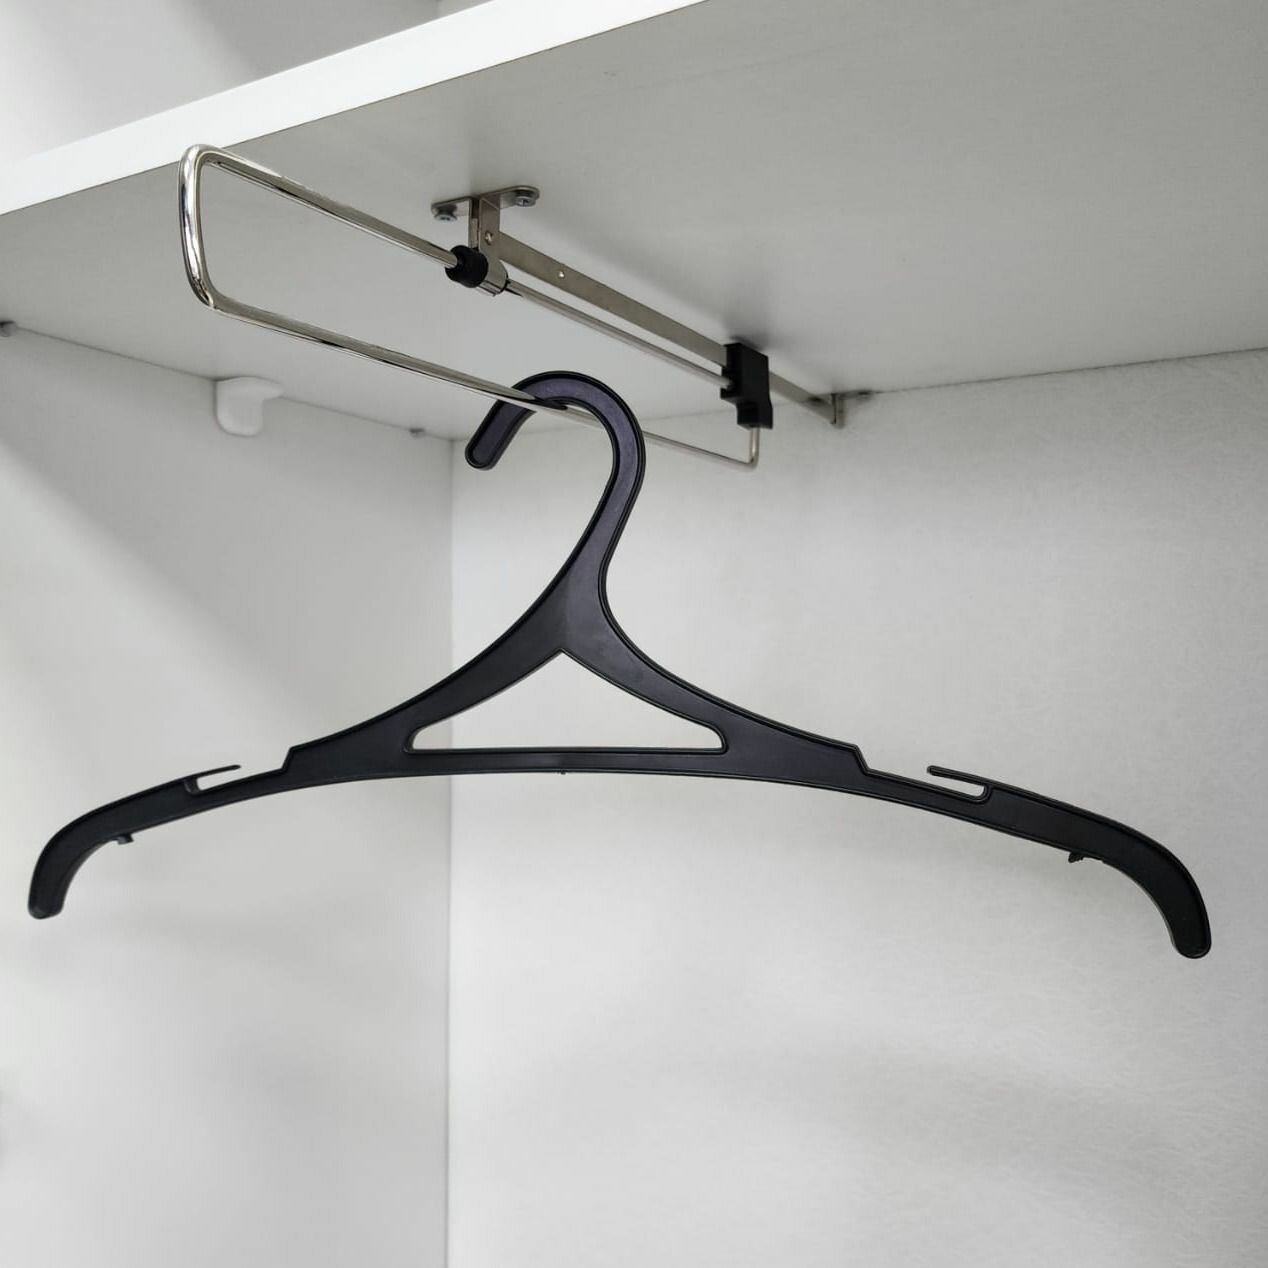 Вешалка для одежды выдвижная в шкаф для одежды потолочная // Раздвижная телескопическая штанга - вешало с верхним креплением.